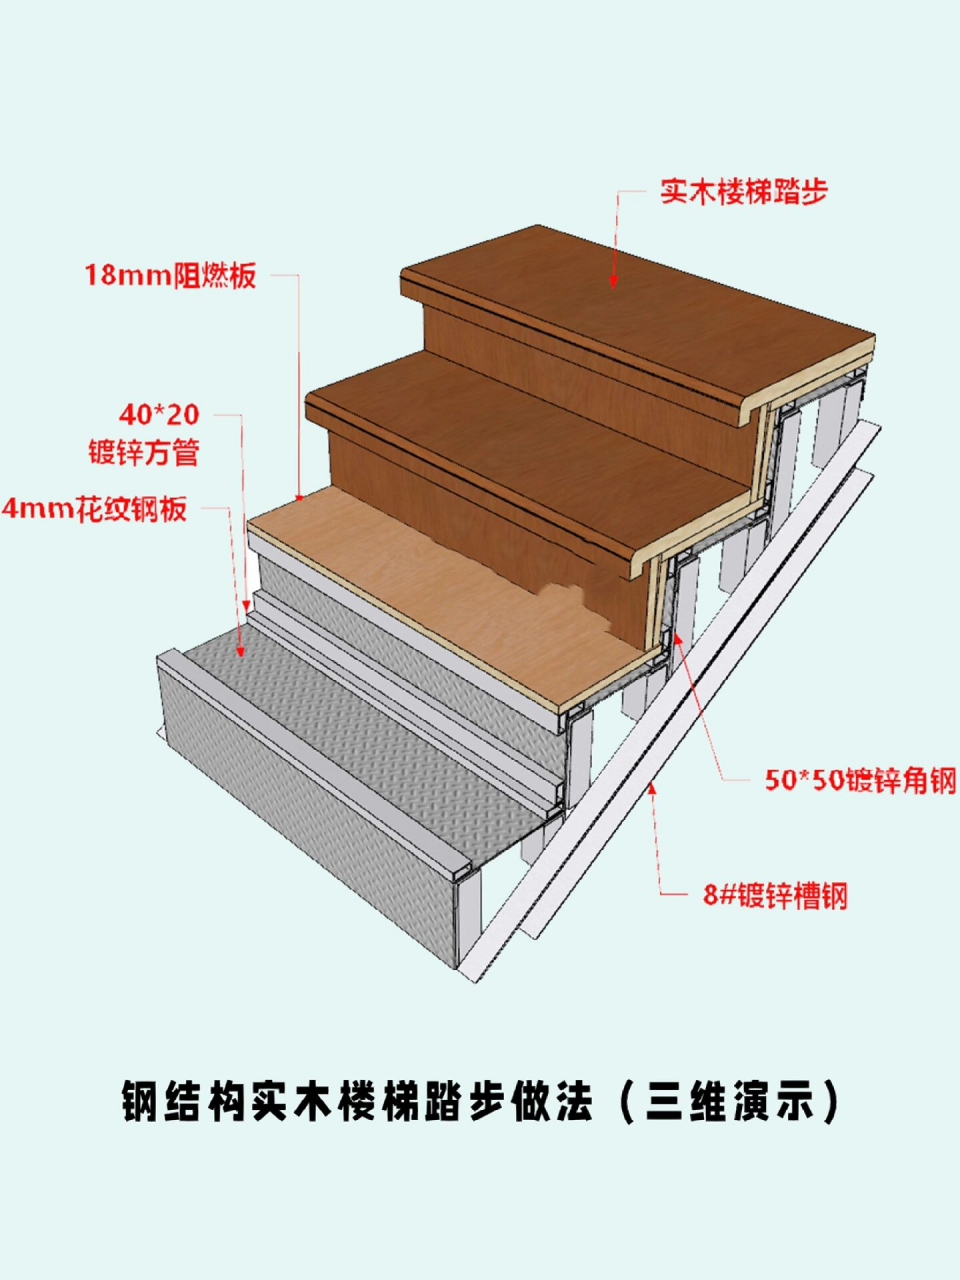 钢结构楼梯制作步骤图片